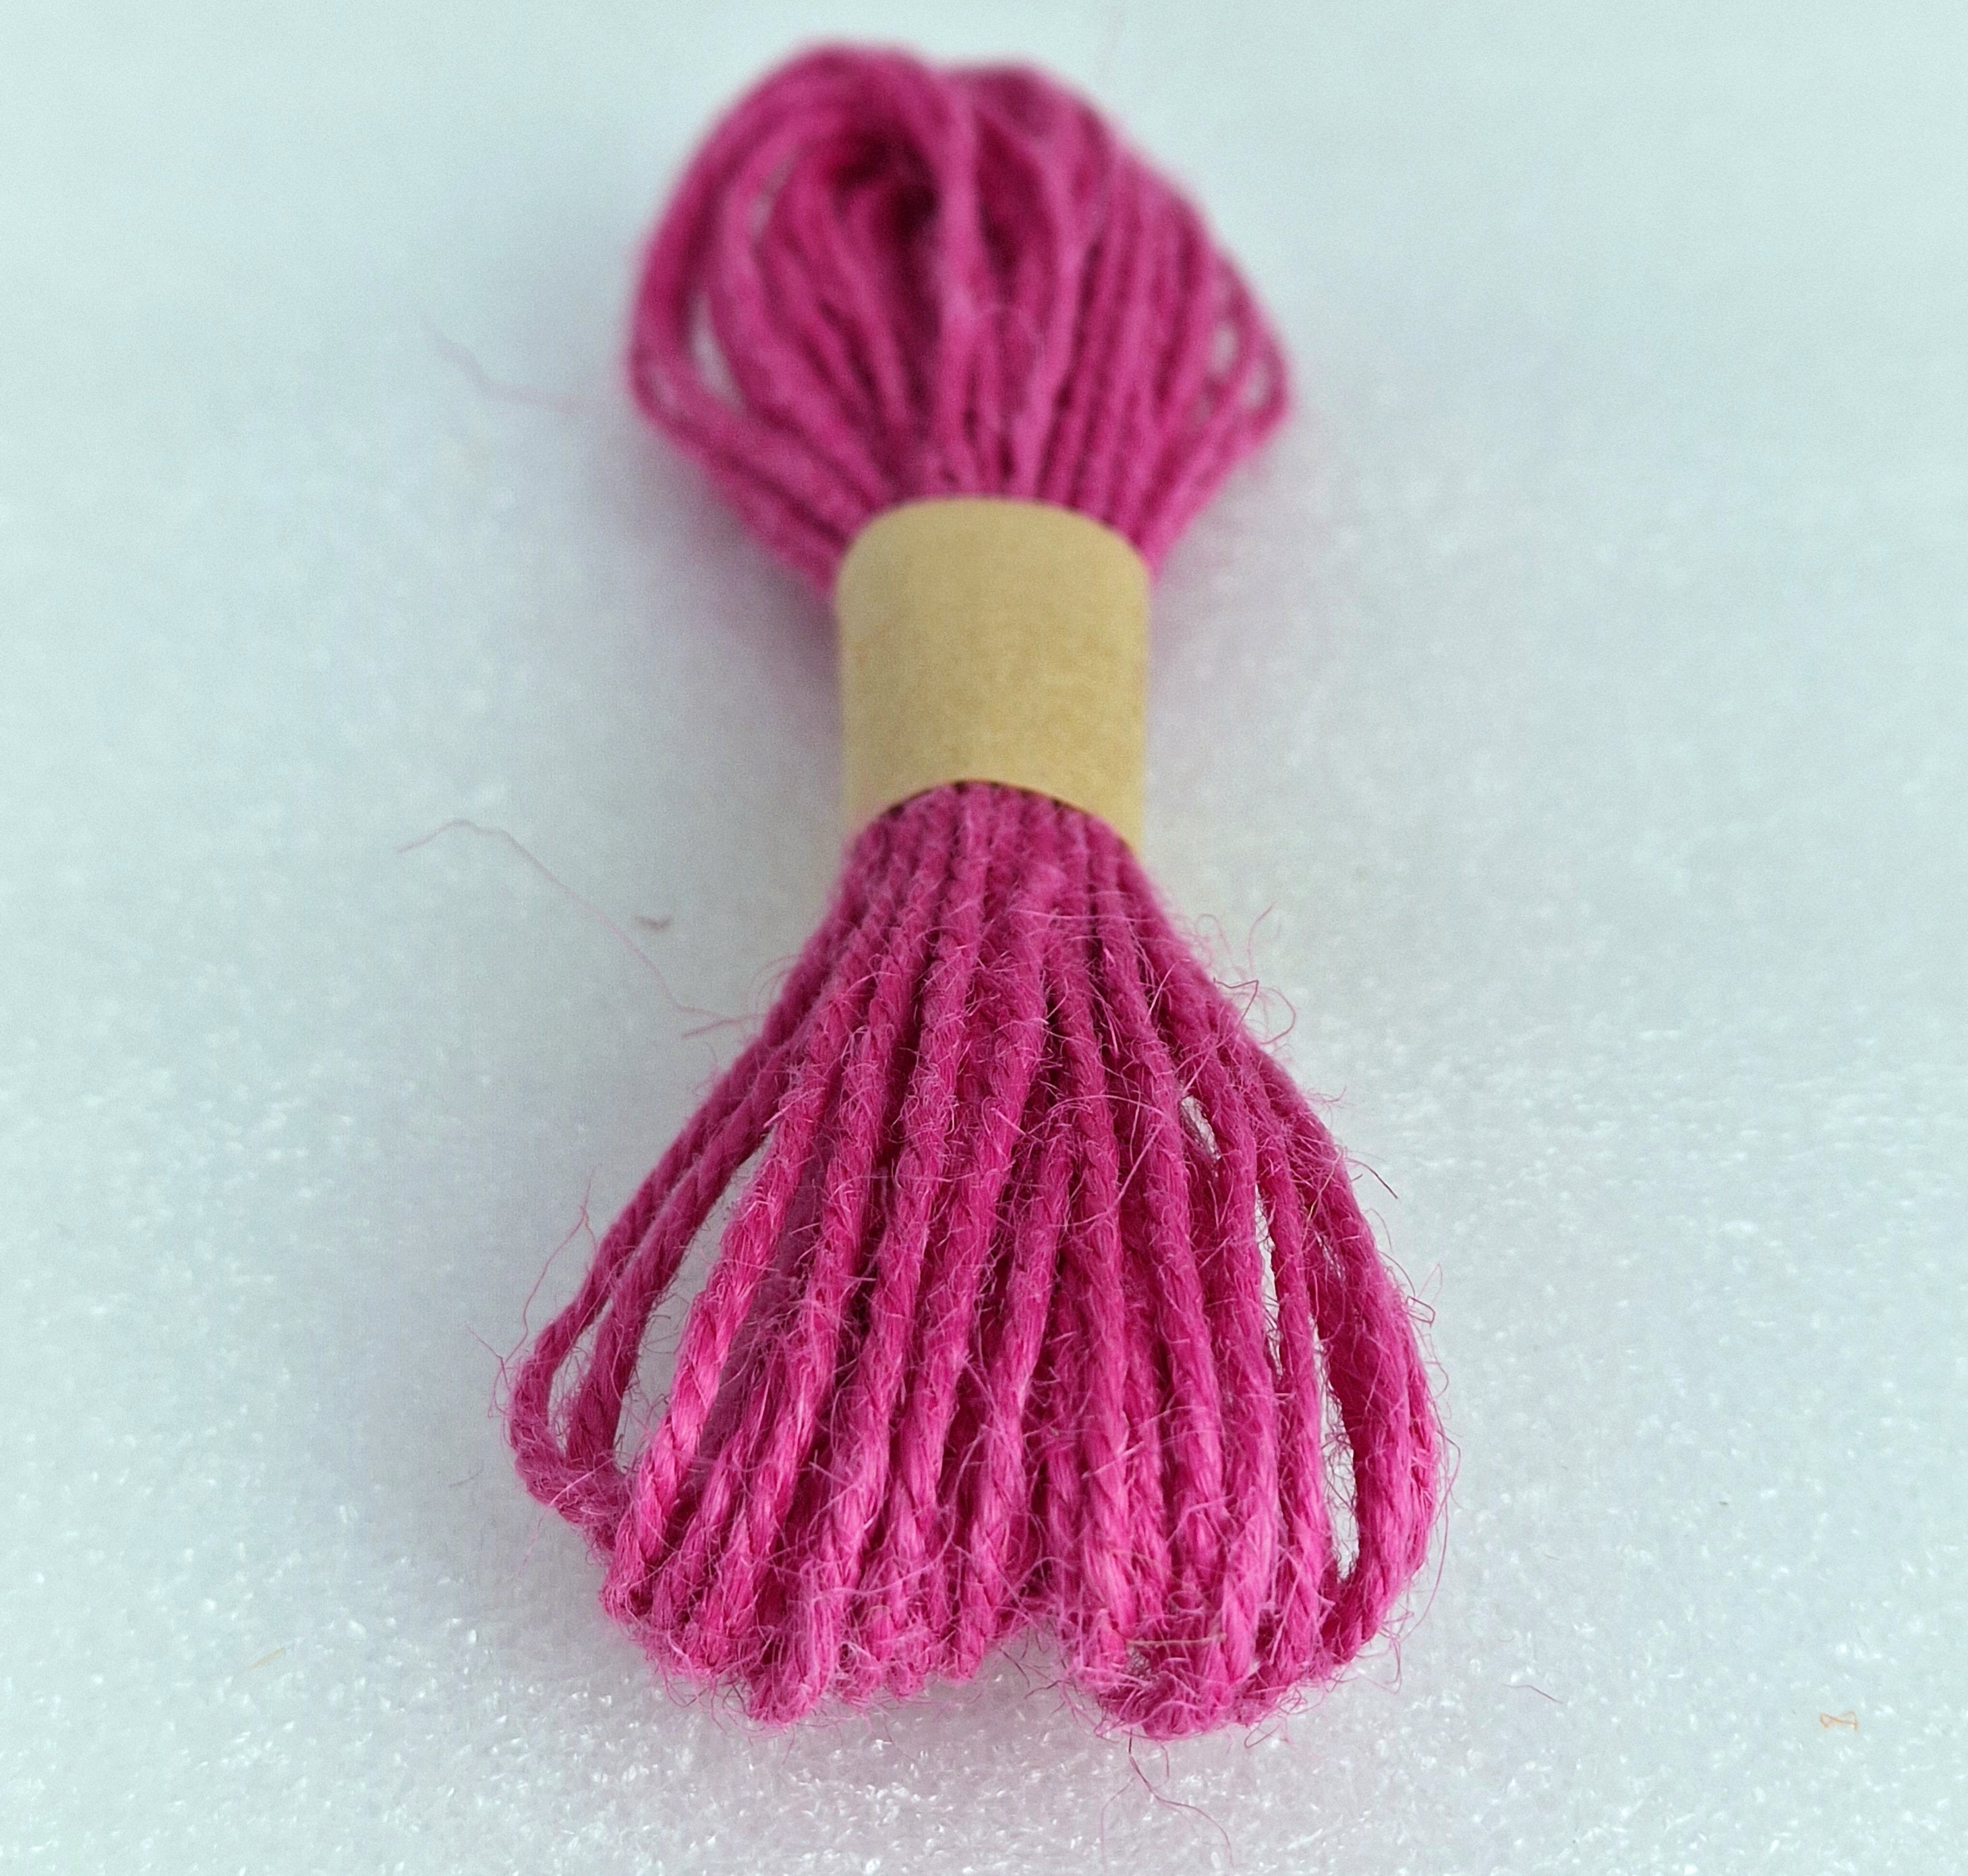 MajorCrafts 10metres 1mm thick Rose Pink Jute Twine String